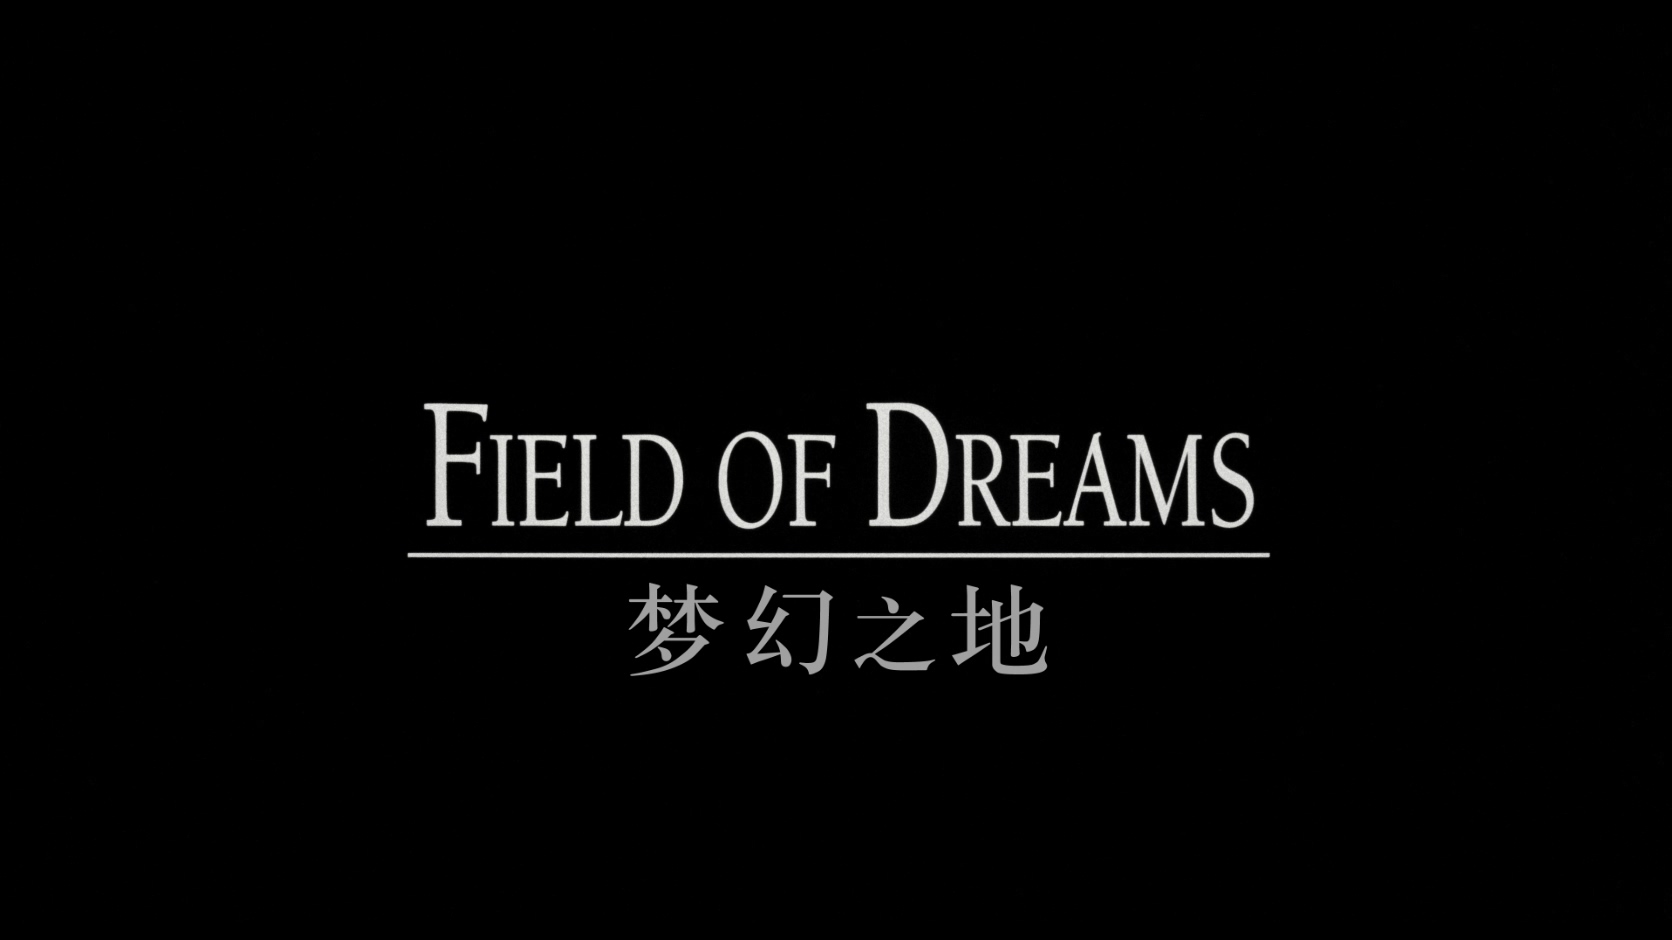 梦幻之地 / 梦幻成真 / 梦幻球场 / 梦田 / 棒球男孩 [DIY简繁字幕] Field of Dreams 1989 2160p UHD BluRay HEVC DTS-HD MA 7.1-AA@OurBits    [59.03 GB]-2.jpg